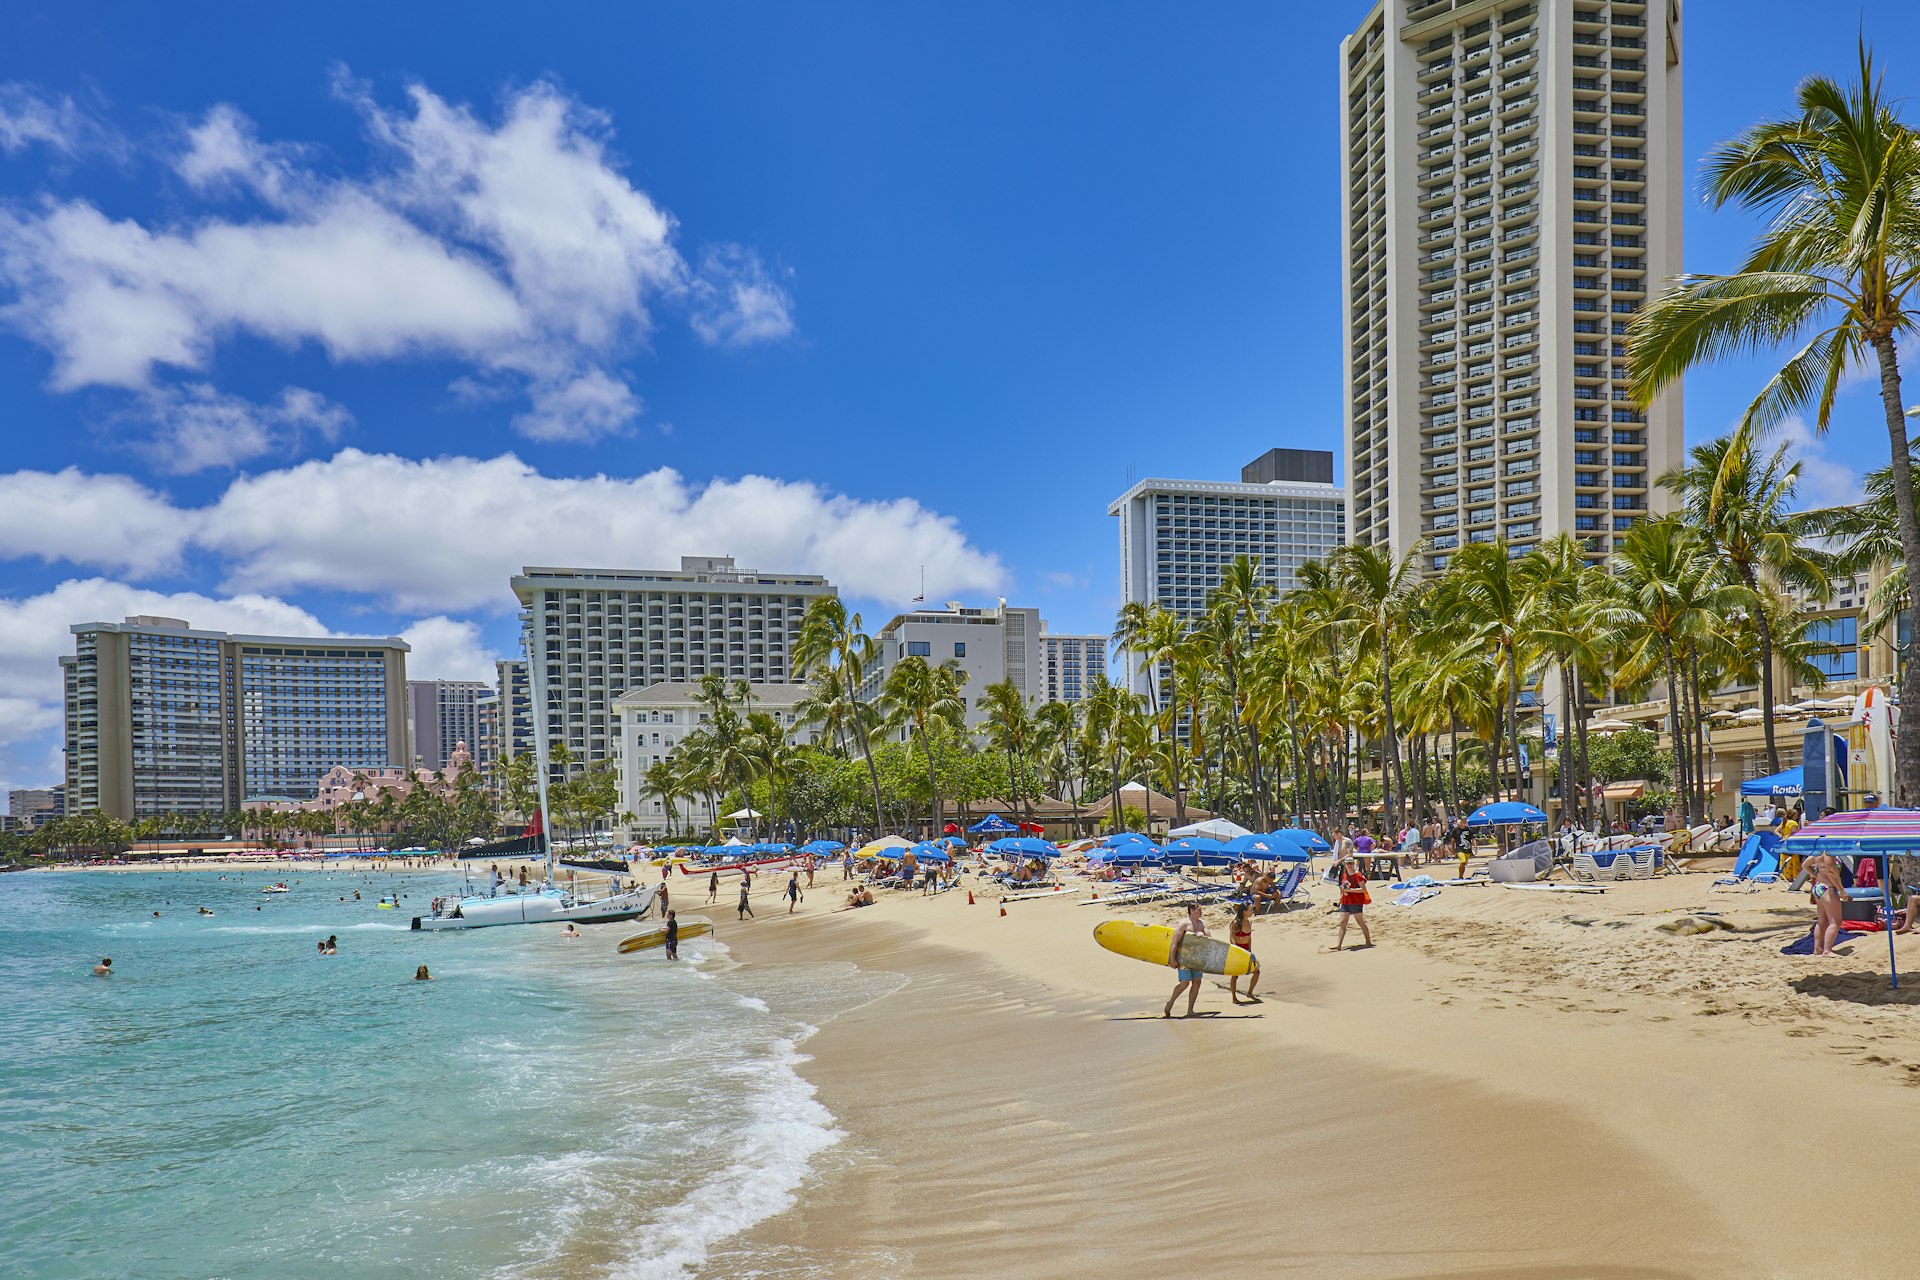 Waikiki Beach and buildings,Honolulu,Oahu,Hawaii,USA